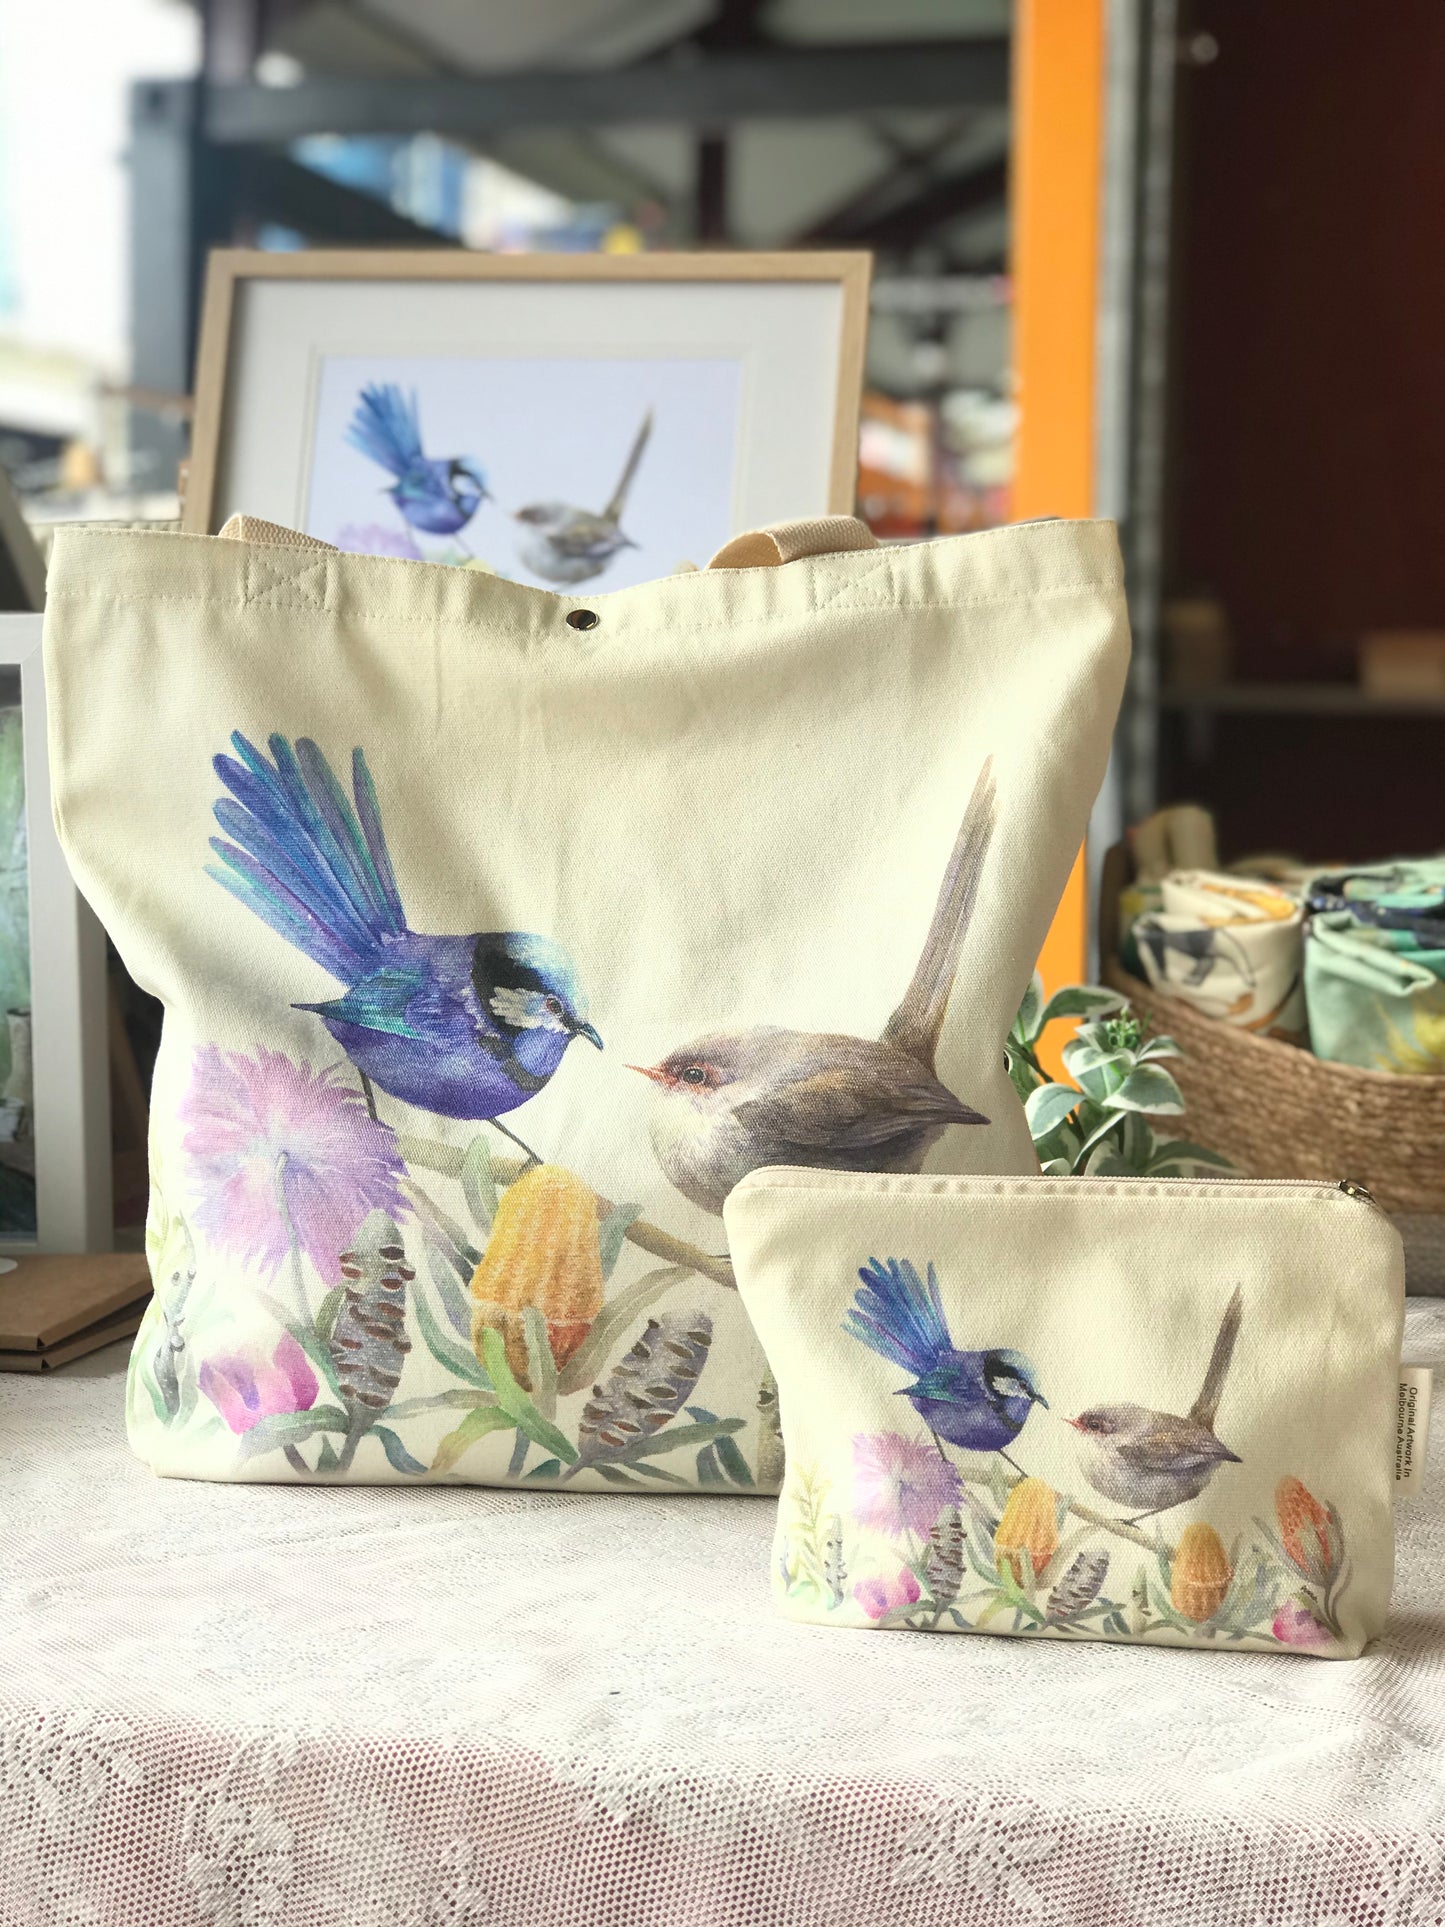 Blue Wren Tote Bag,Art Bag,Gift,Australian Bird